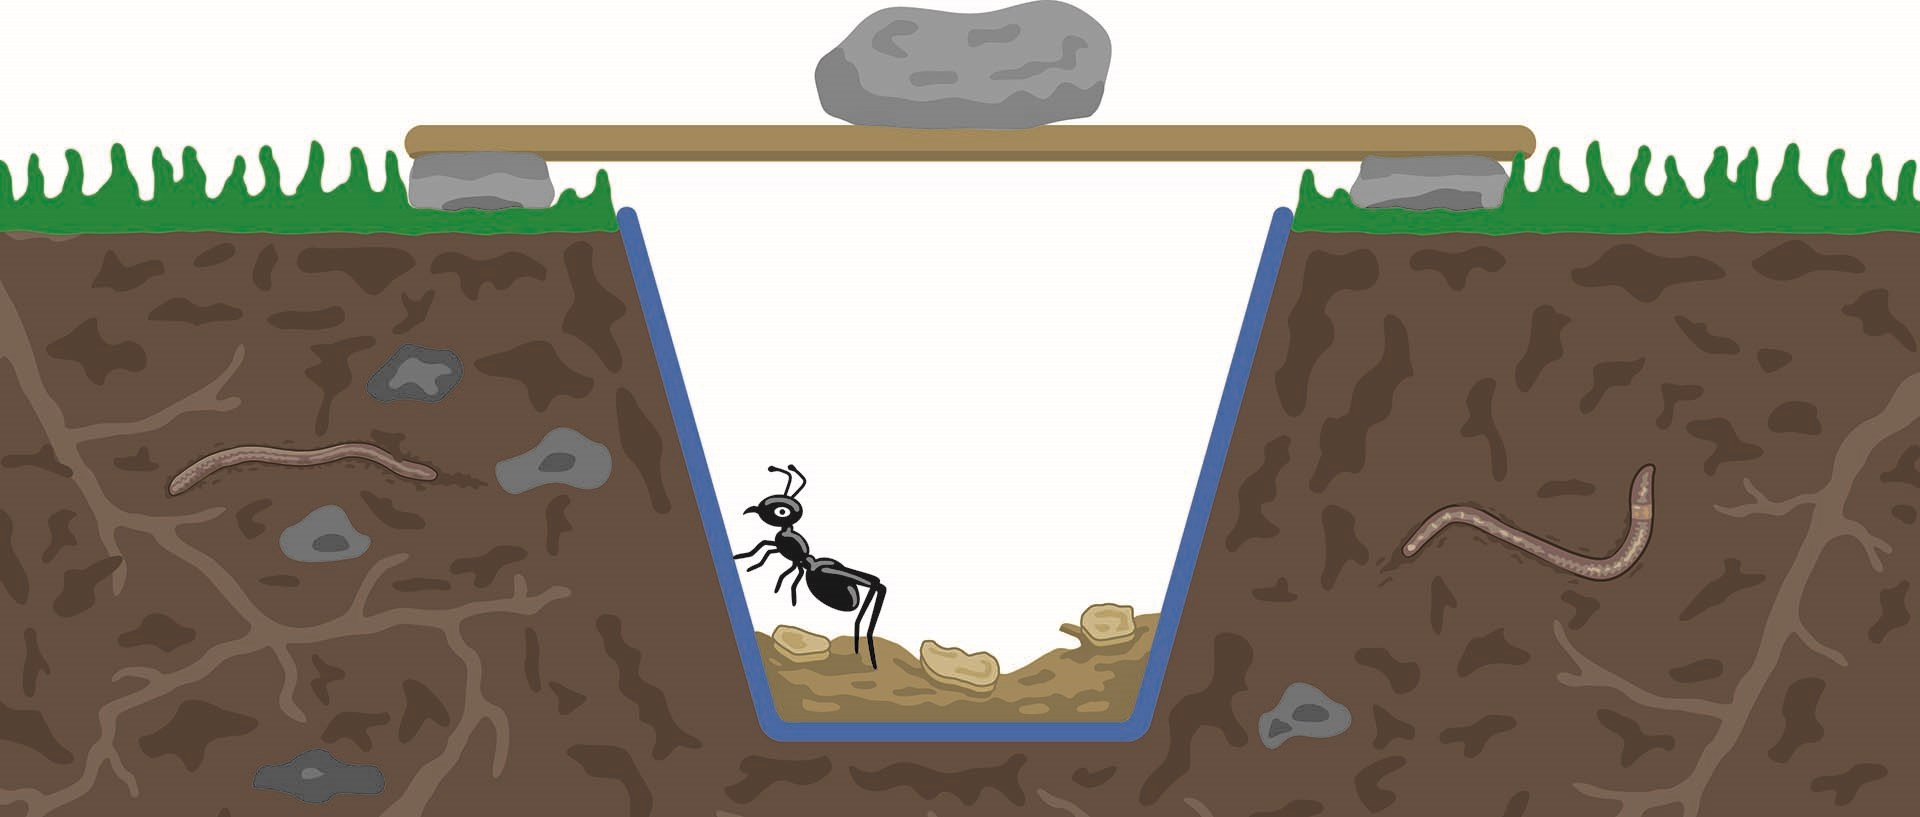 Bug Pitfall Illustration For Web